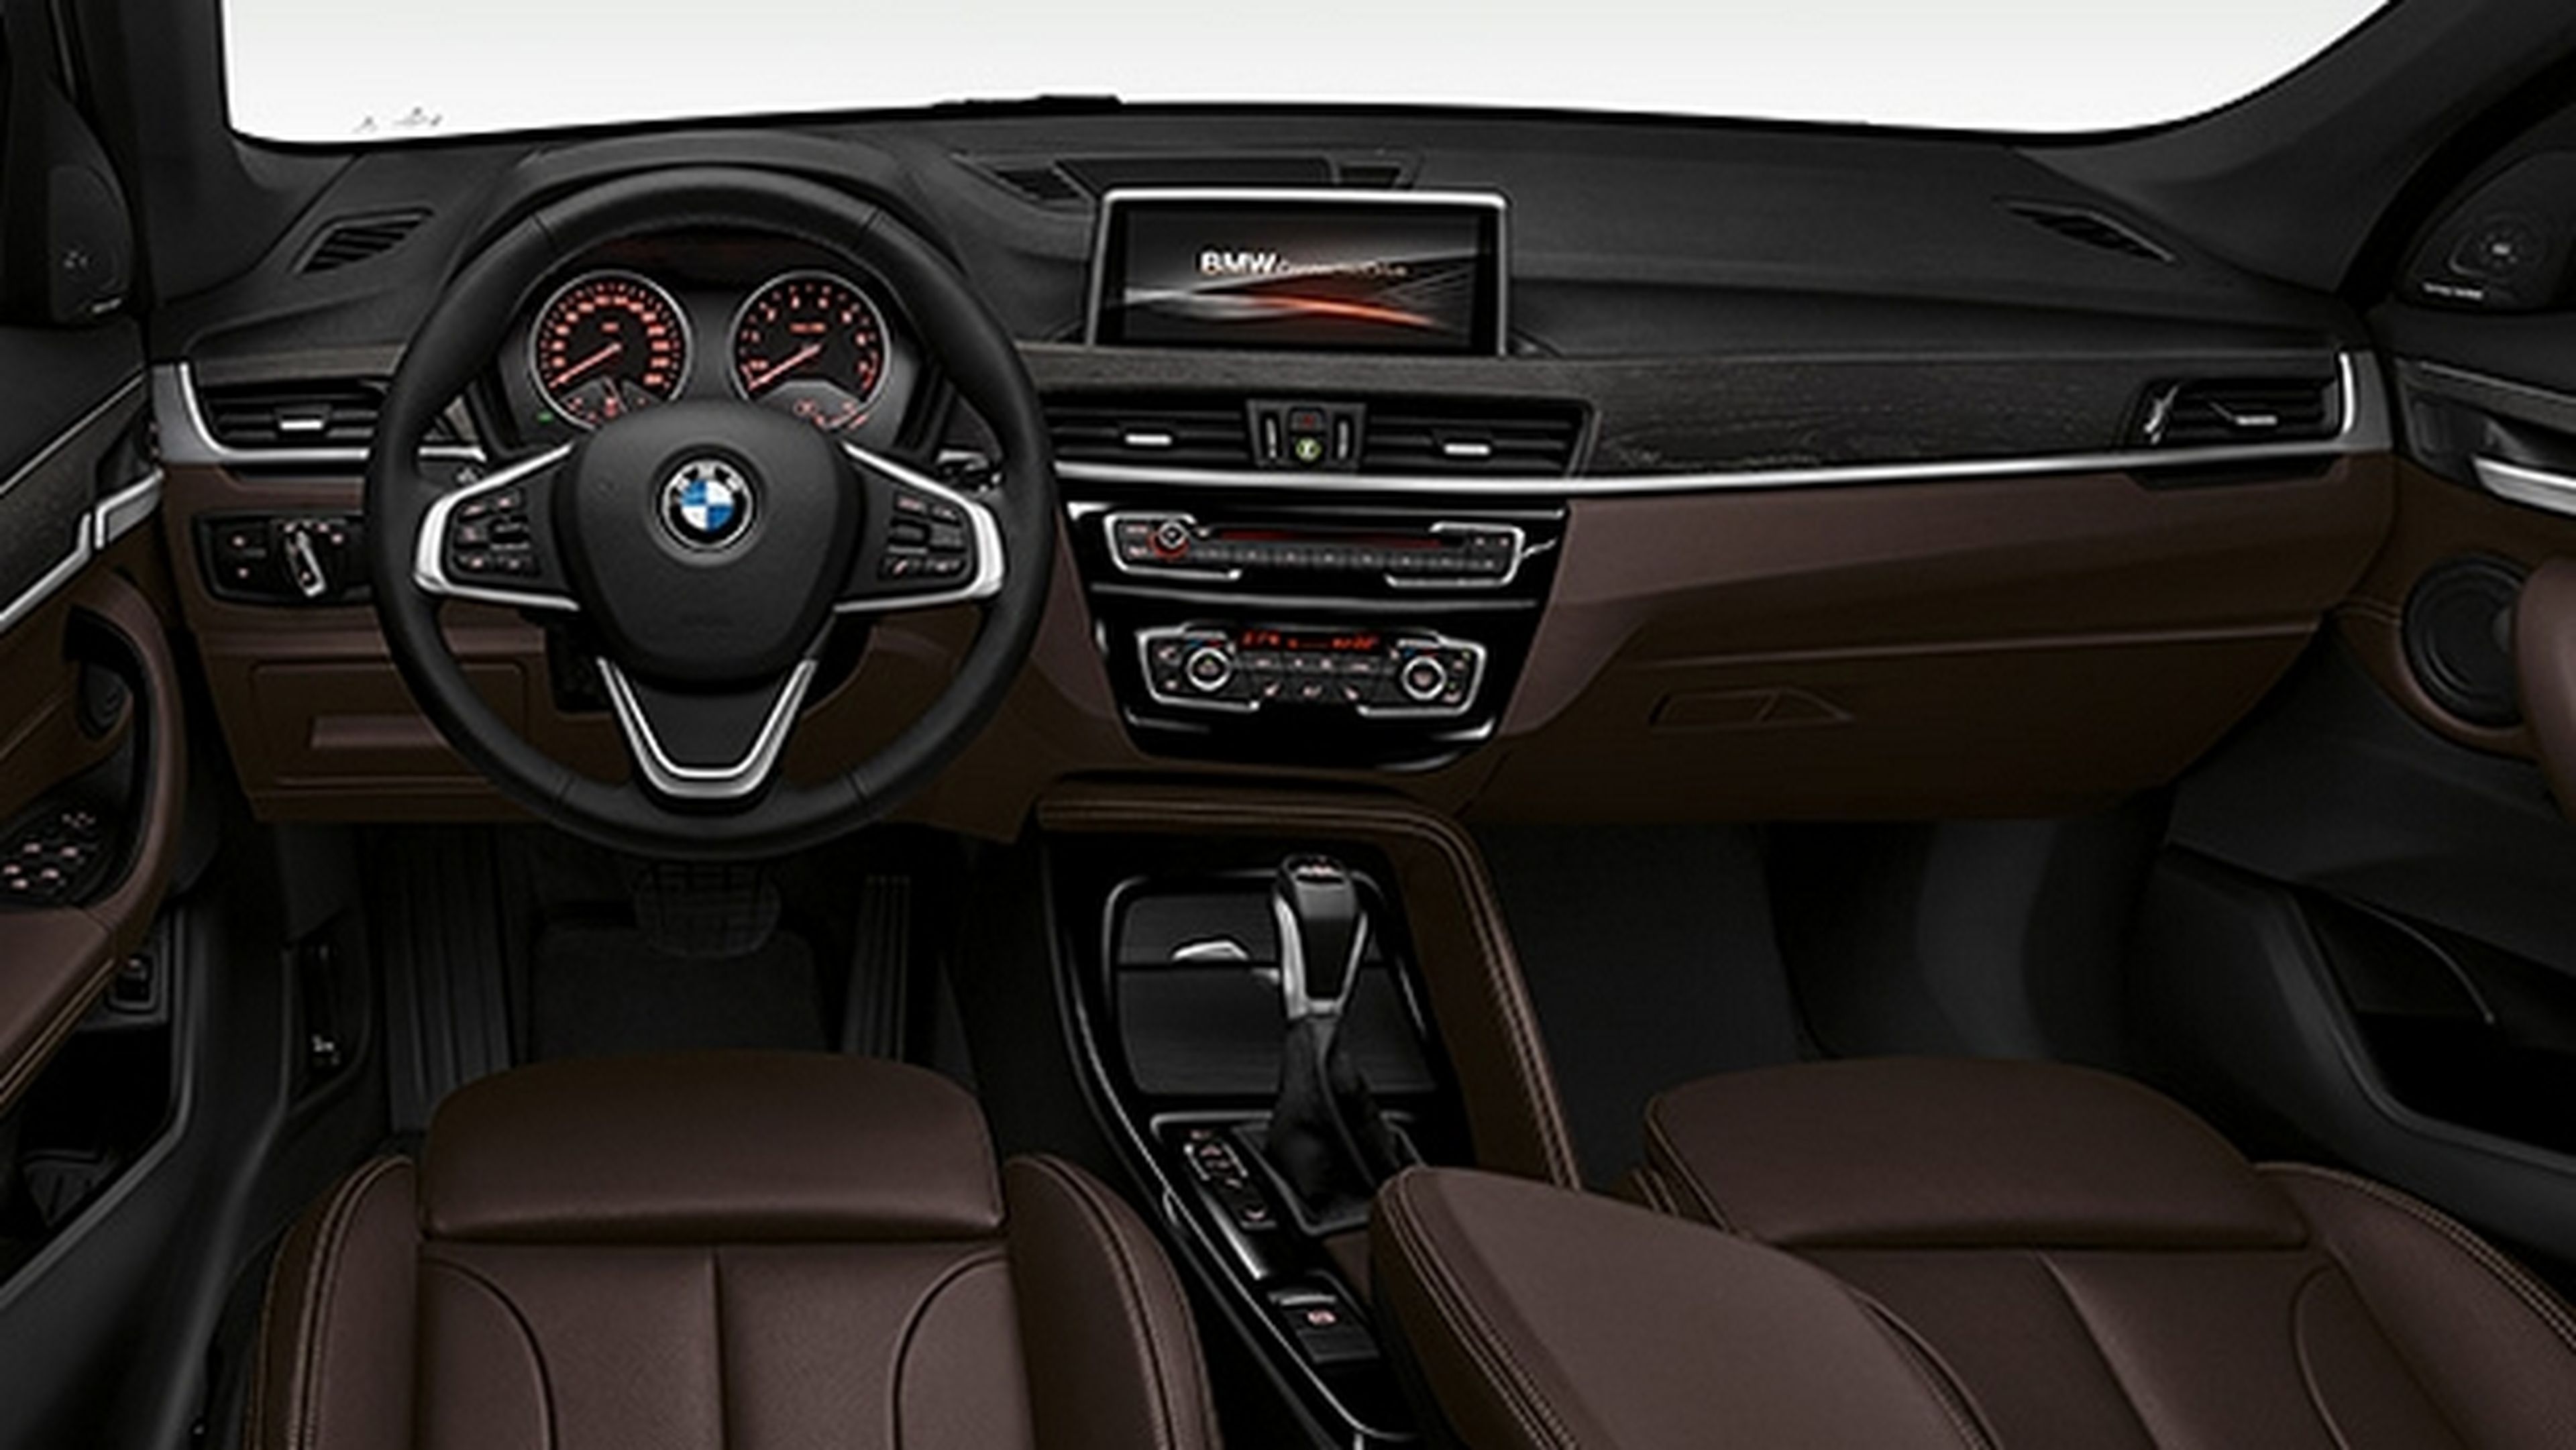 BMW X1, un todoterreno para viajes y ciudad